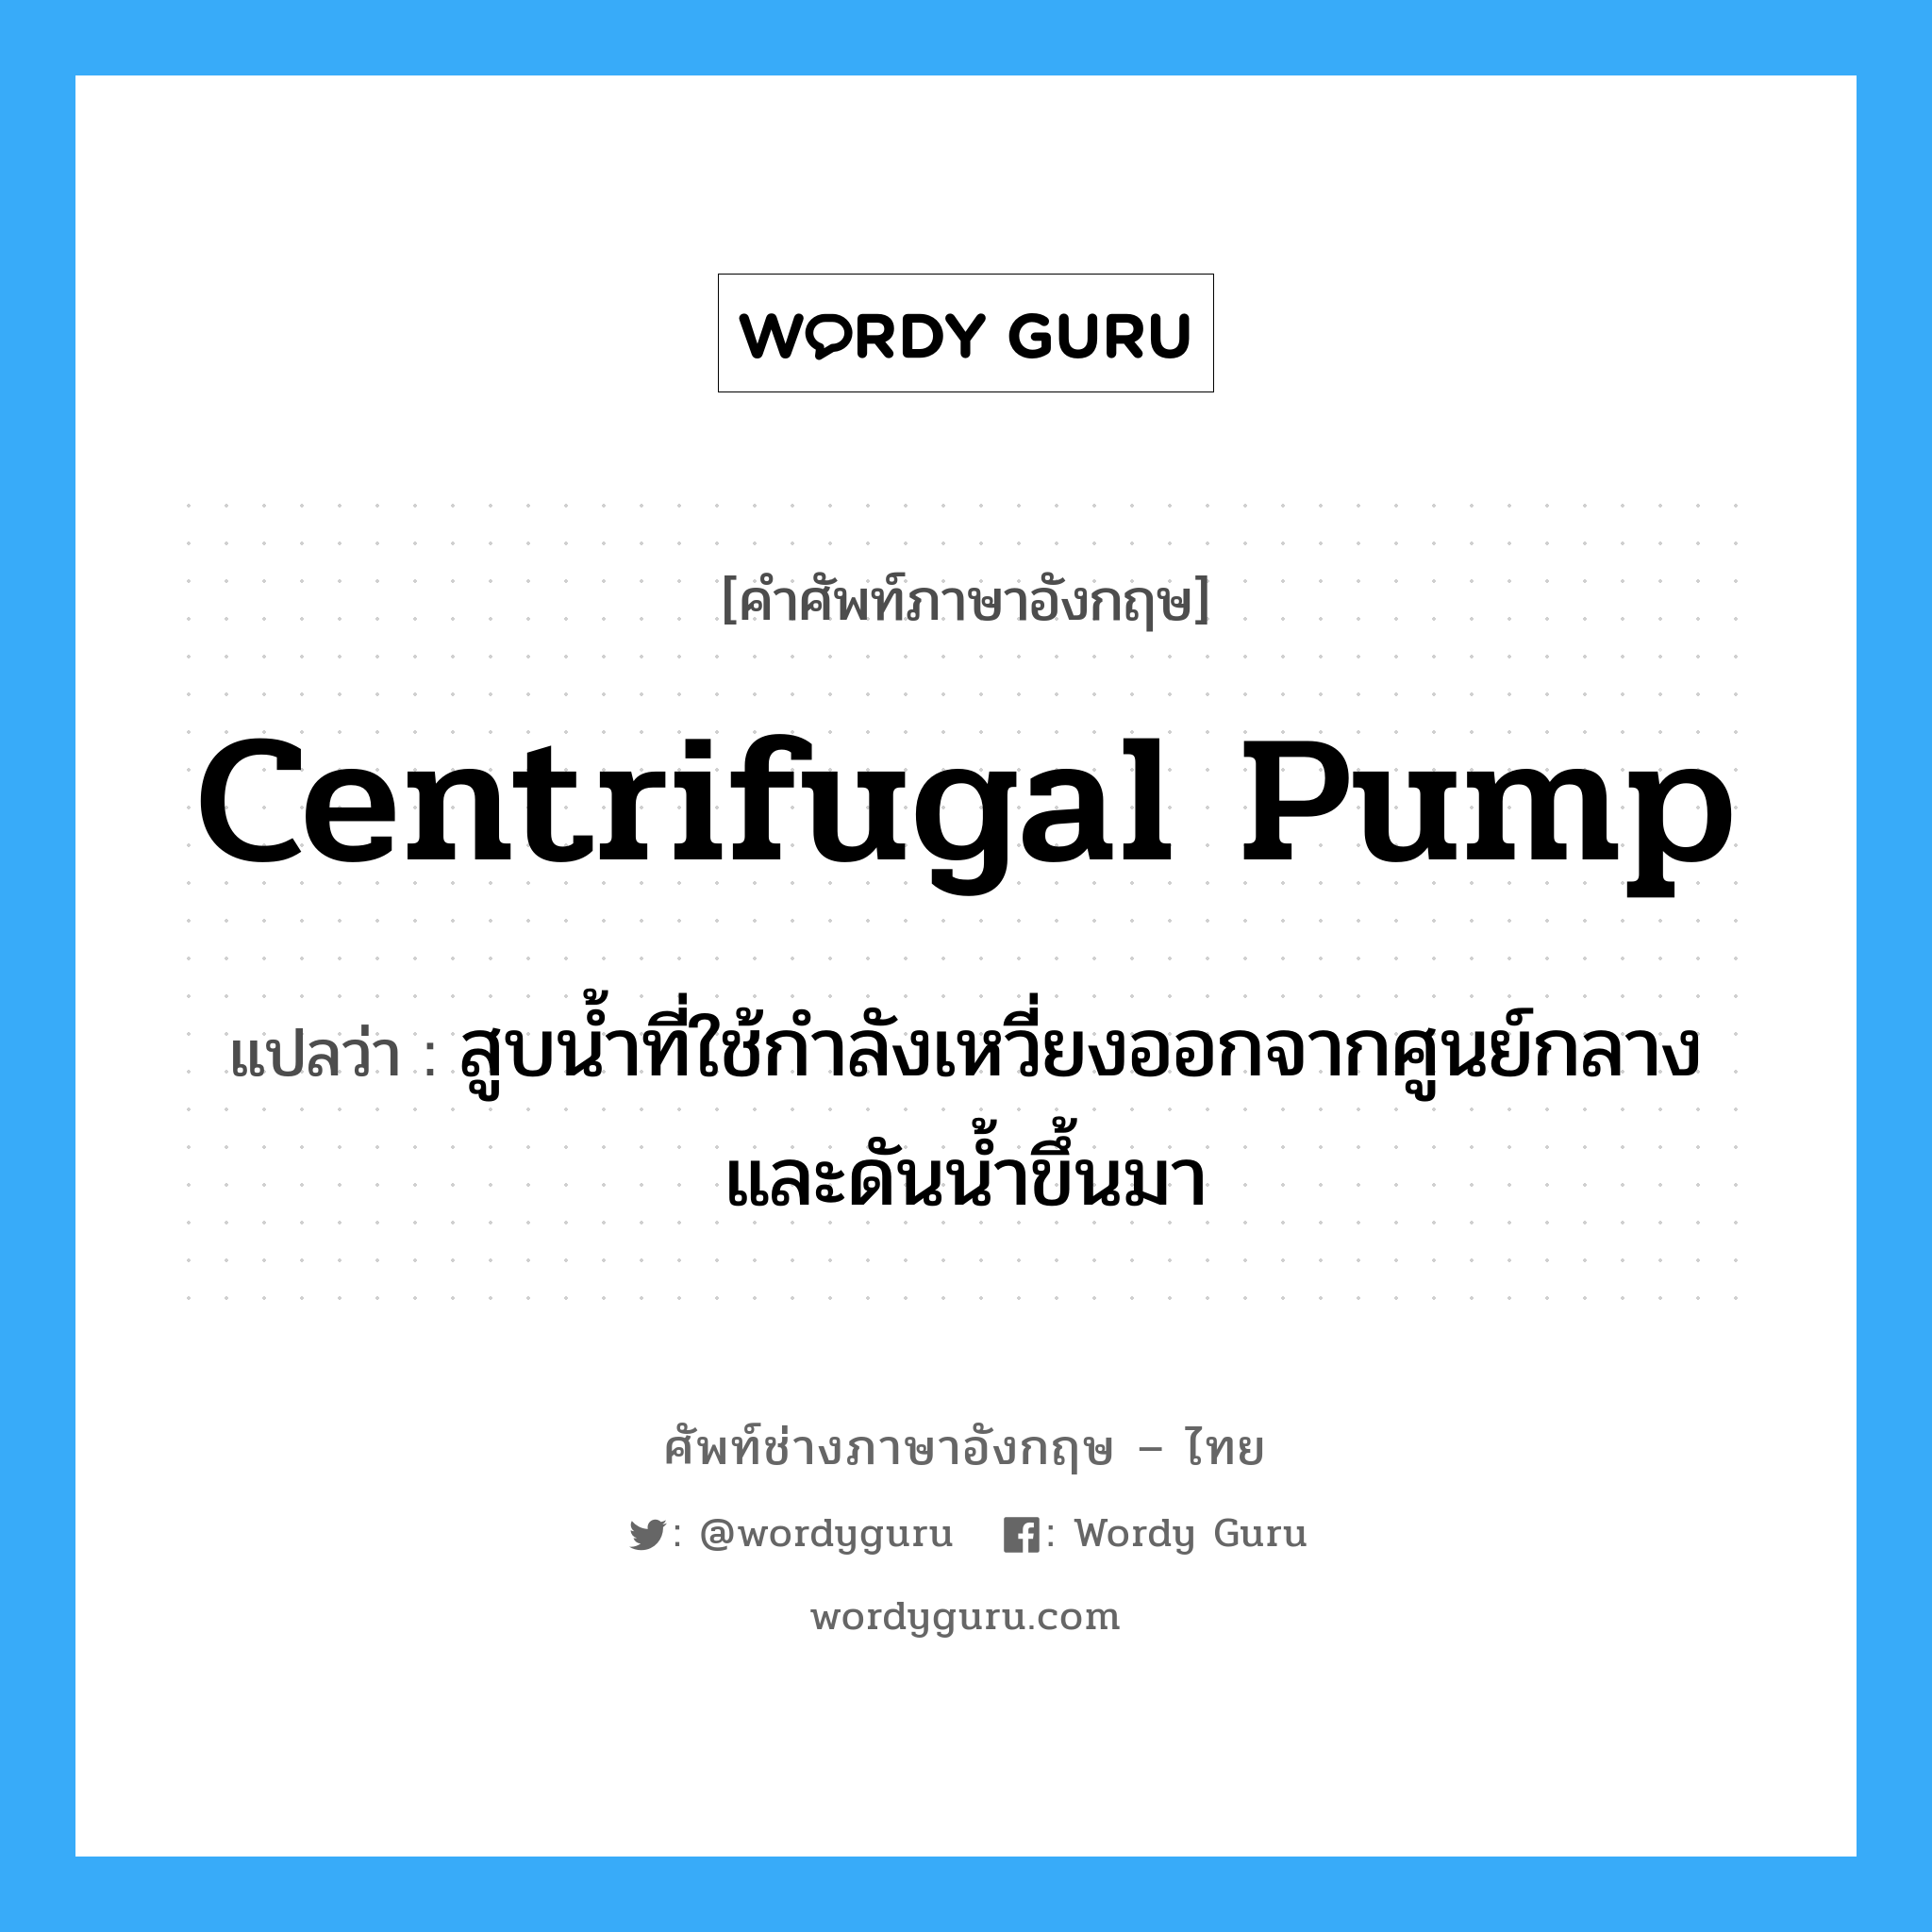 centrifugal pump แปลว่า?, คำศัพท์ช่างภาษาอังกฤษ - ไทย centrifugal pump คำศัพท์ภาษาอังกฤษ centrifugal pump แปลว่า สูบน้ำที่ใช้กำลังเหวี่ยงออกจากศูนย์กลางและดันน้ำขึ้นมา